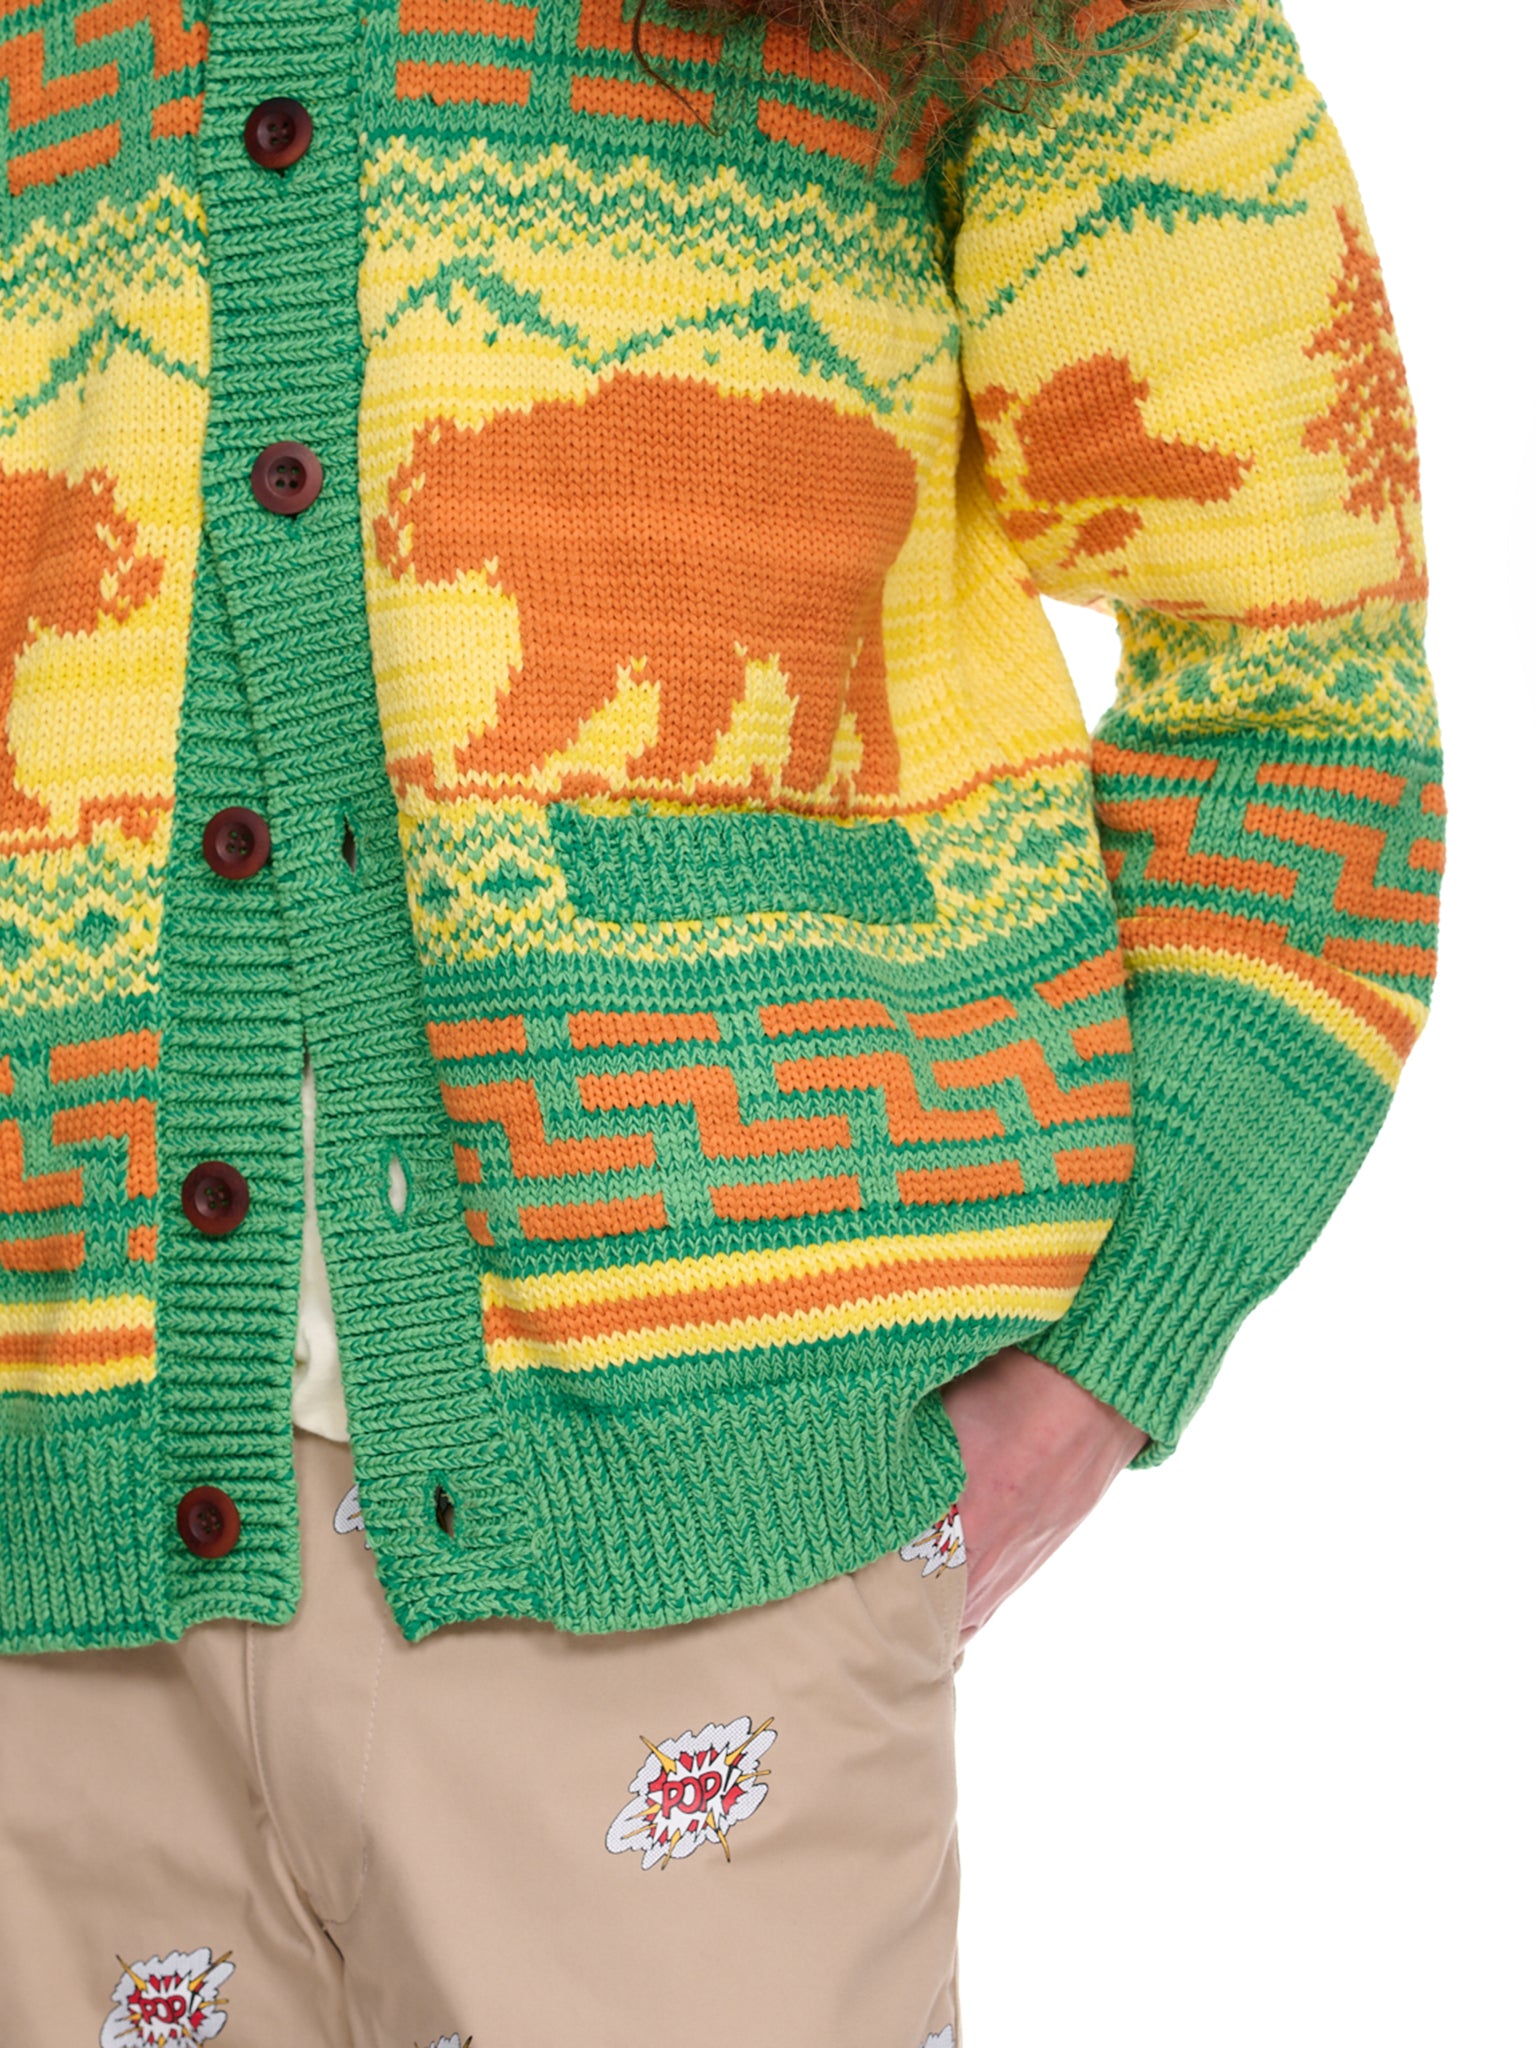 Tribal Knit Sweater (WK-N003-051-GREEN-YELLOW-ORANG)